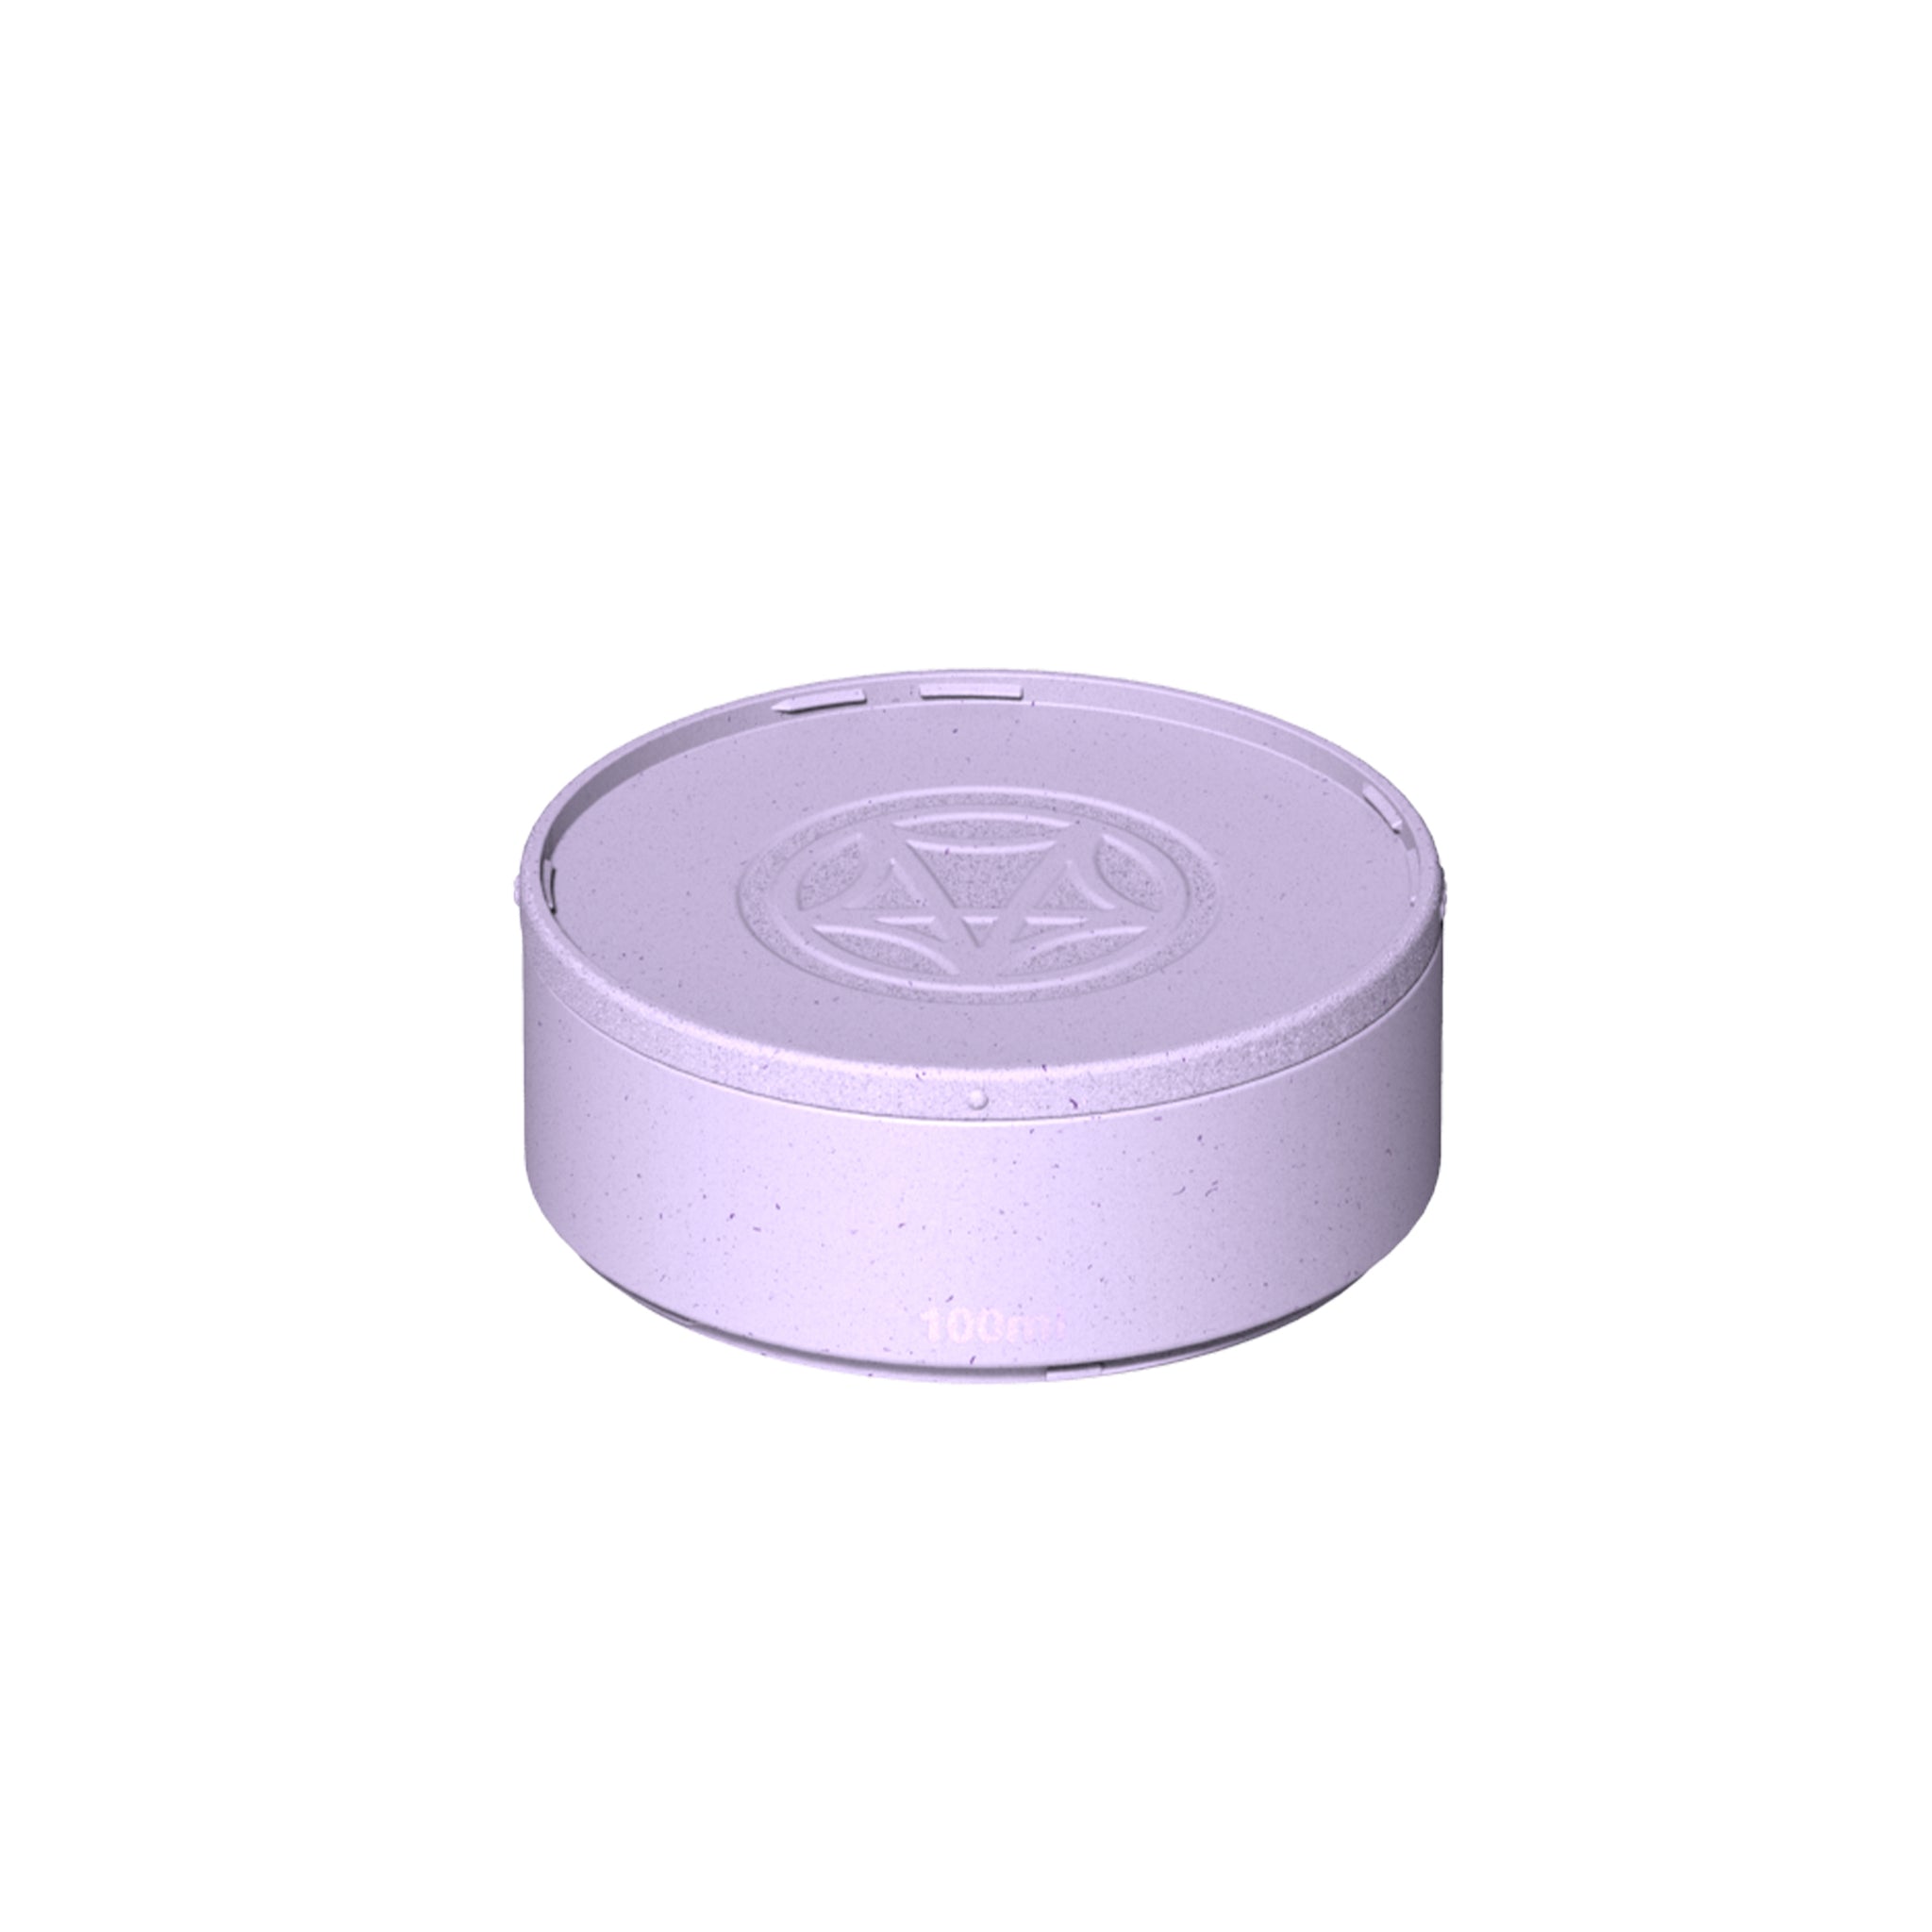 Module de 100ml fermé de couleur lilas sur fond blanc